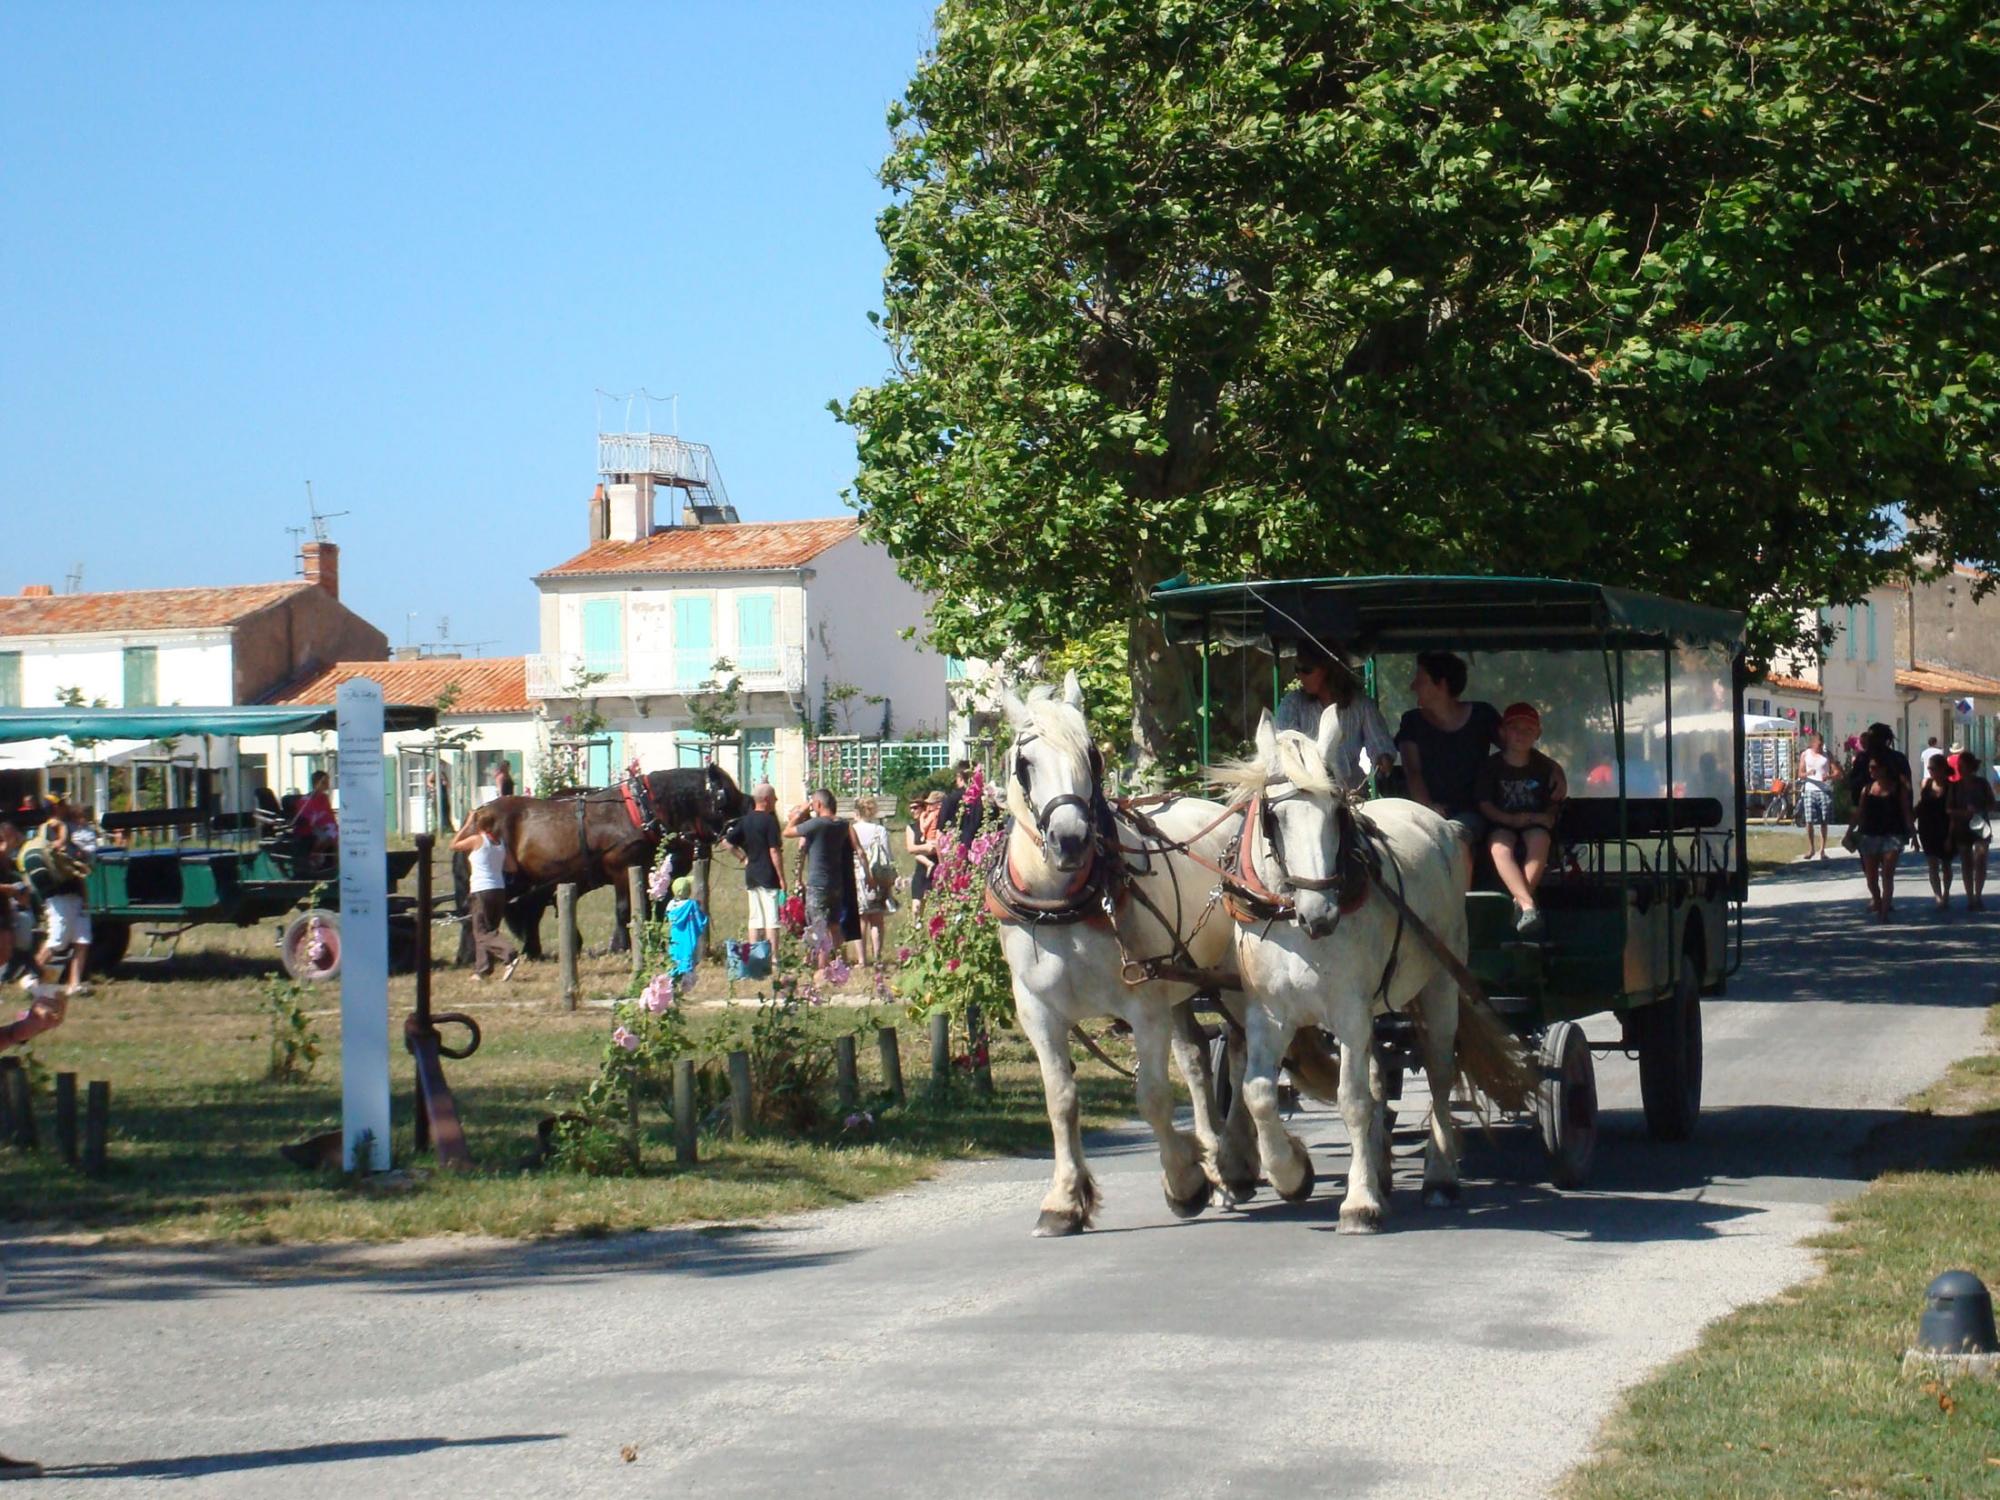 Aix eiland per paard en wagen - Overtochten met de veerboten Fouras / Aix eiland